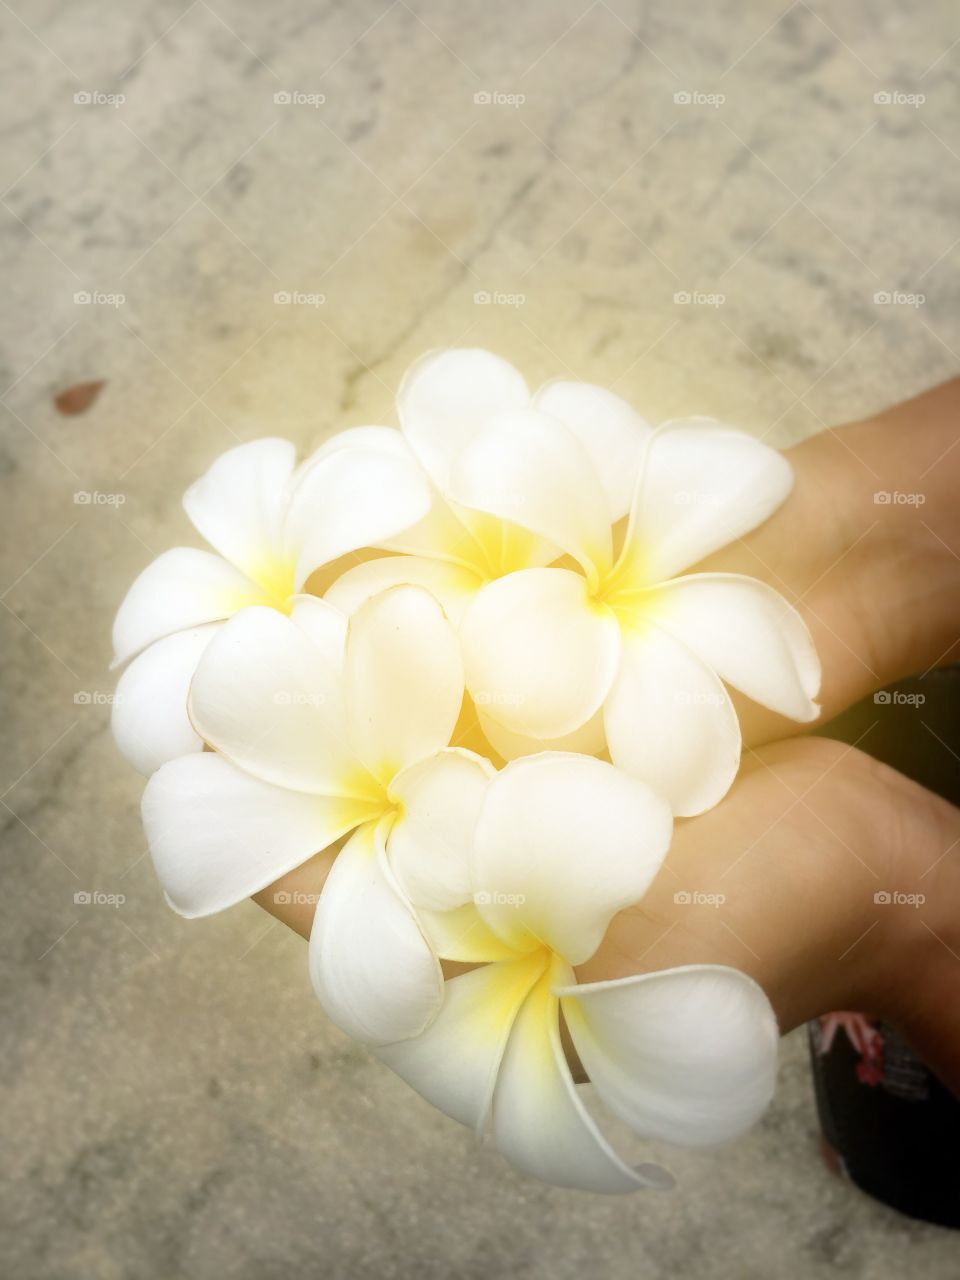 White plumeria flower in hand